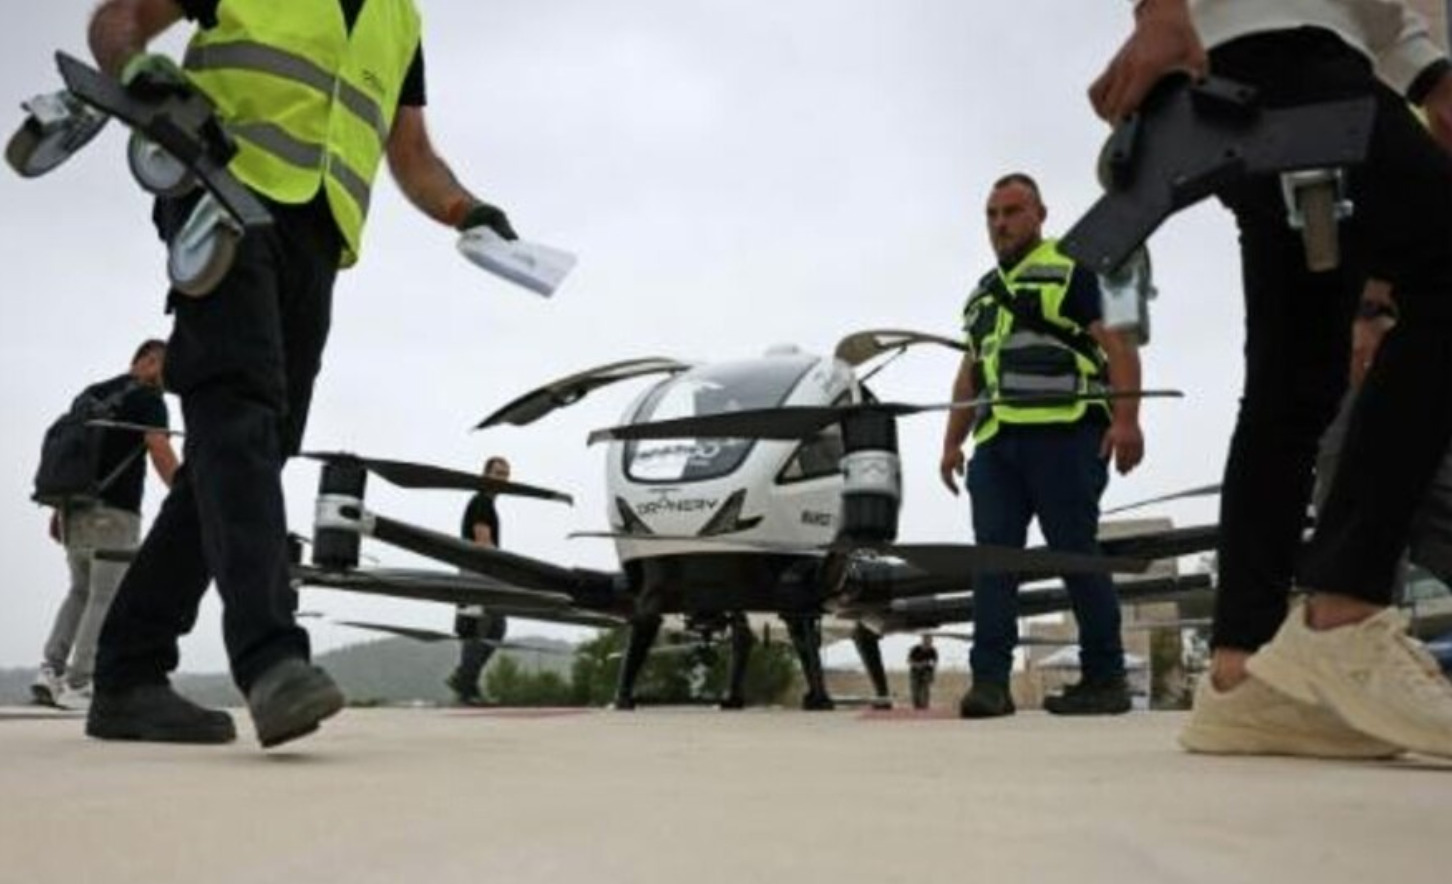 Israël test taxidrones voor personenvervoer